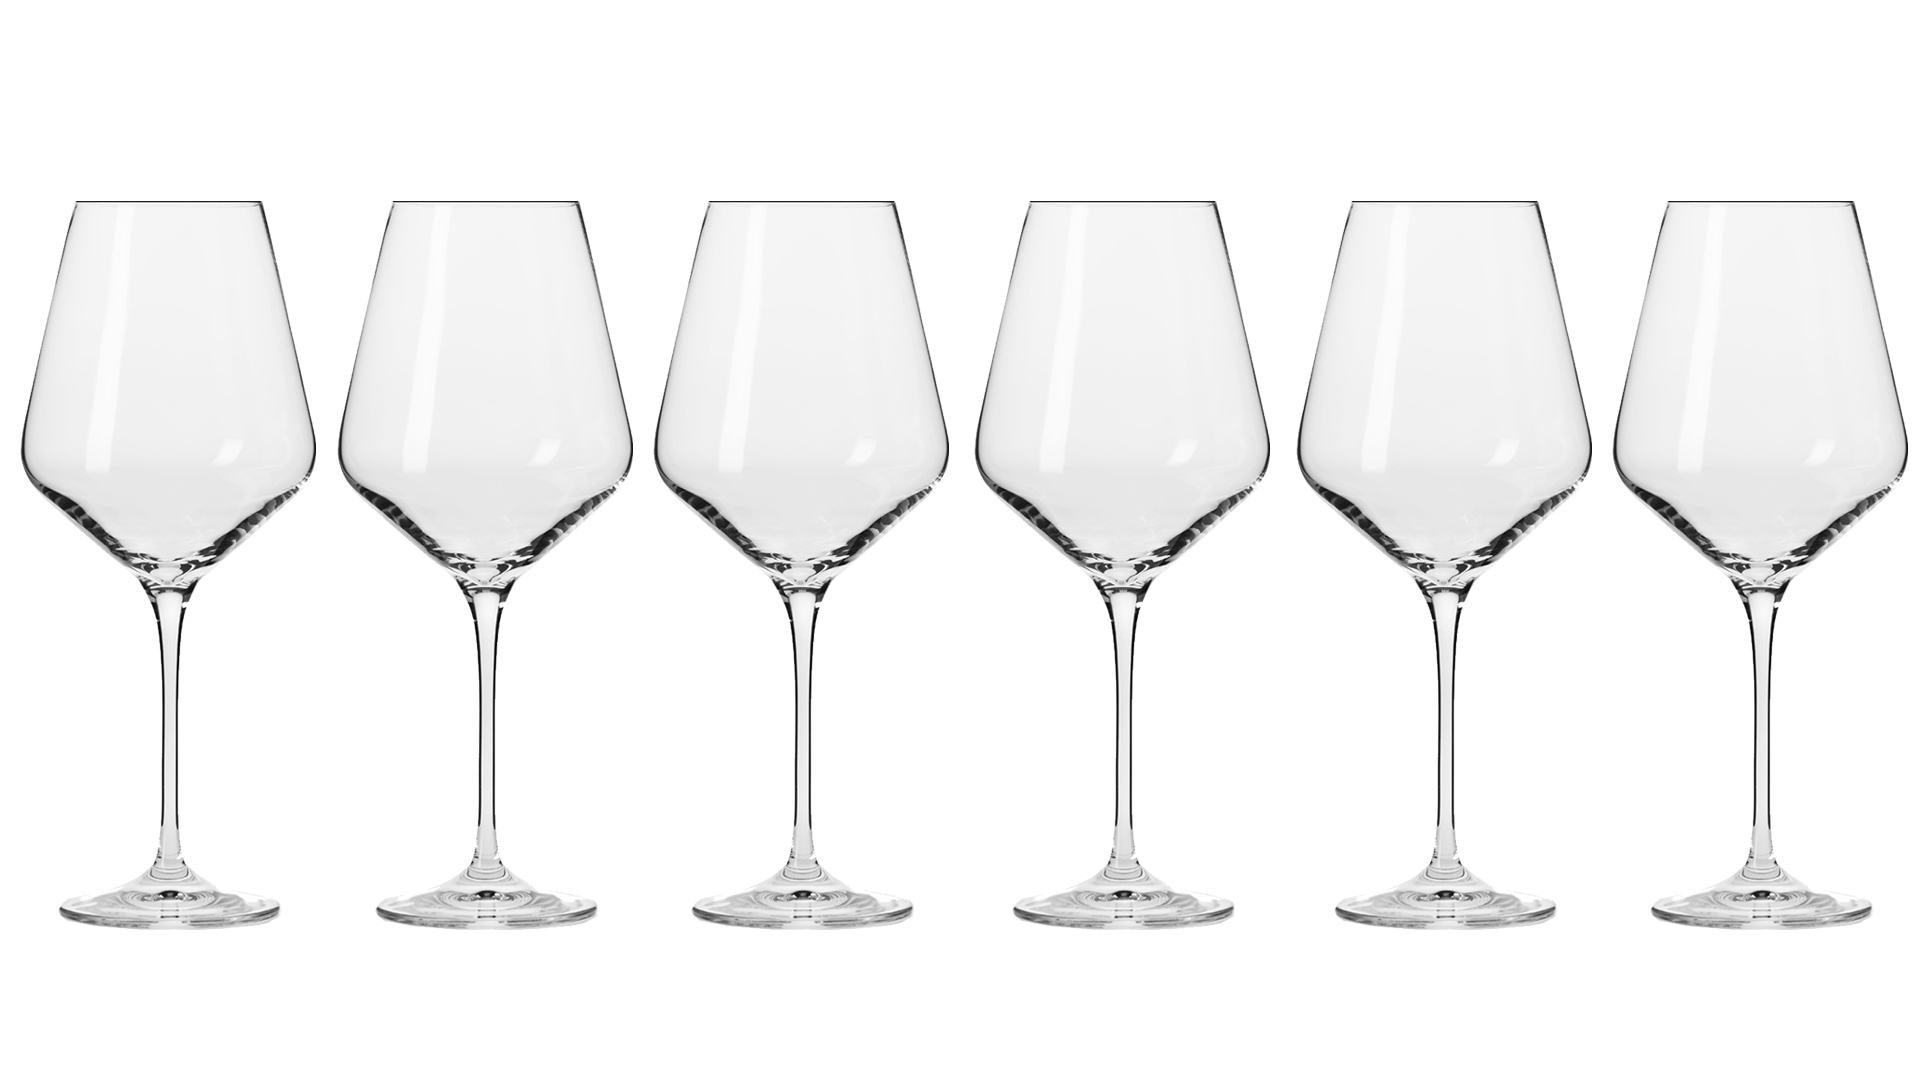 Набор бокалов для красного вина Krosno Авангард 490 мл, 6 шт